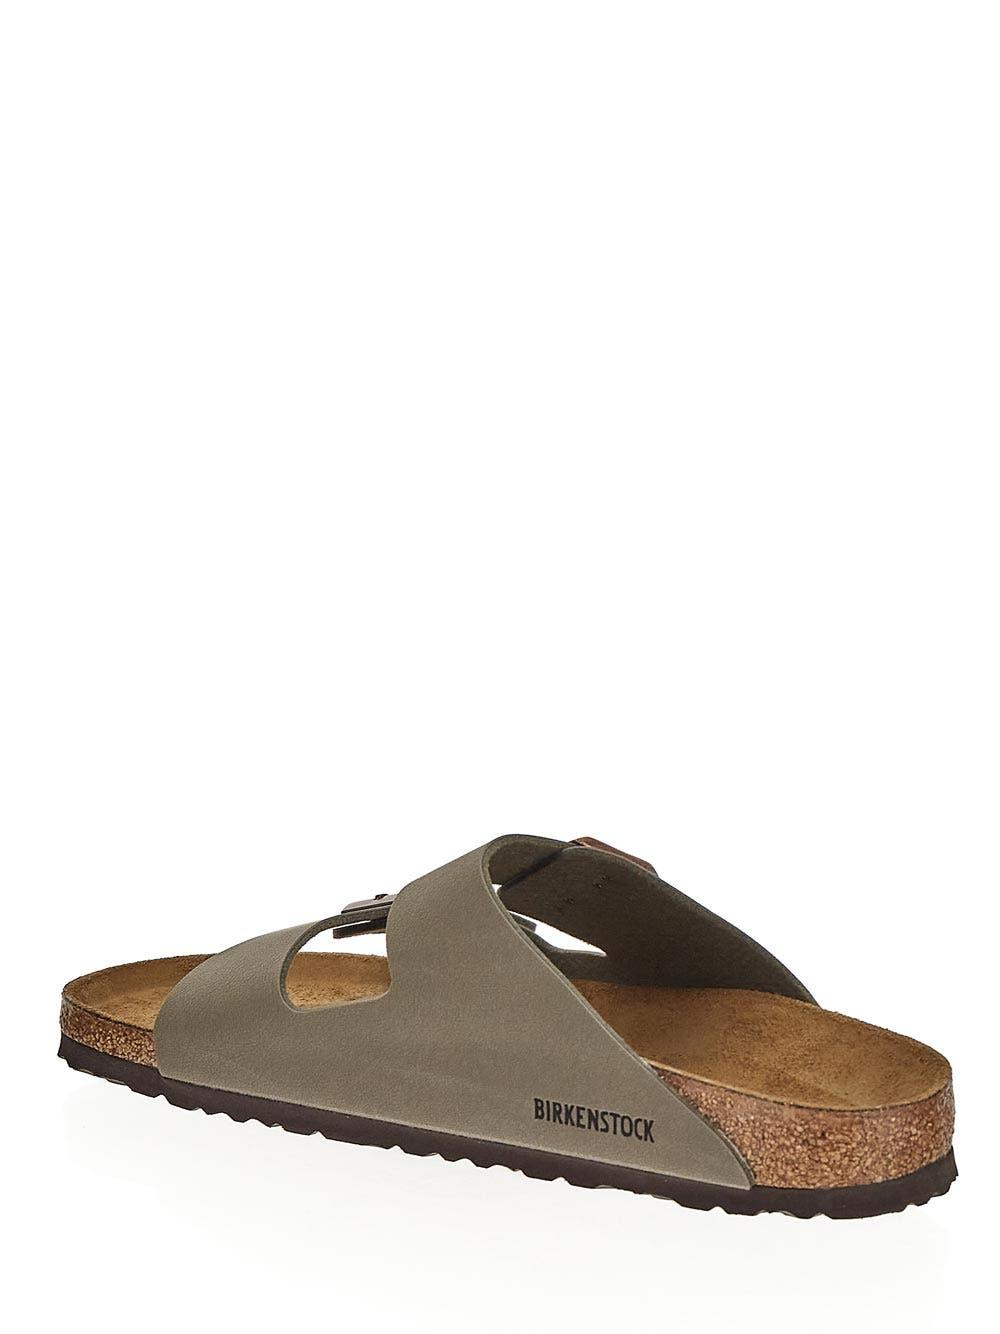 Birkenstock Arizona BS Sandals - Taupe